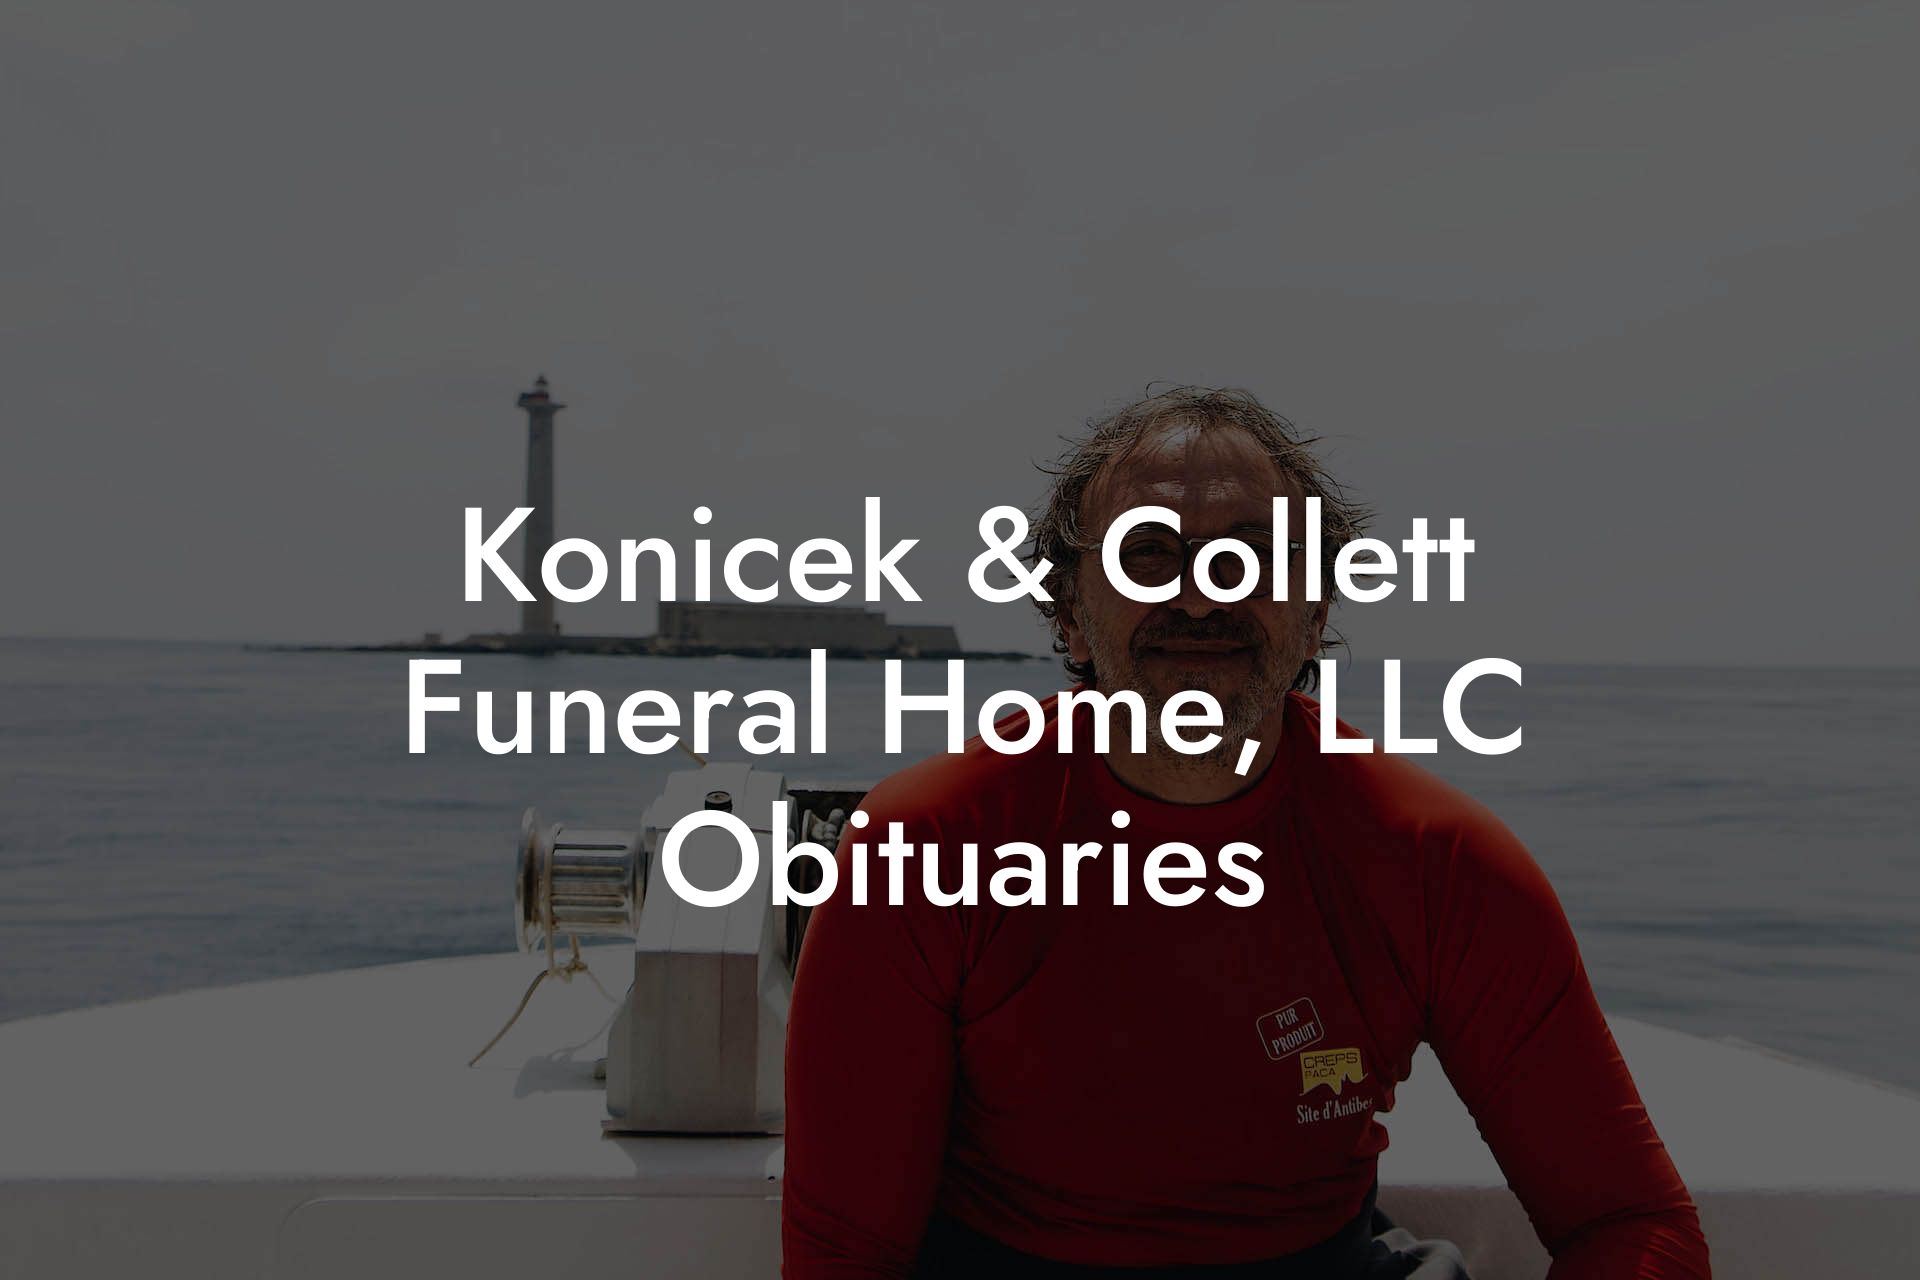 Konicek & Collett Funeral Home, LLC Obituaries